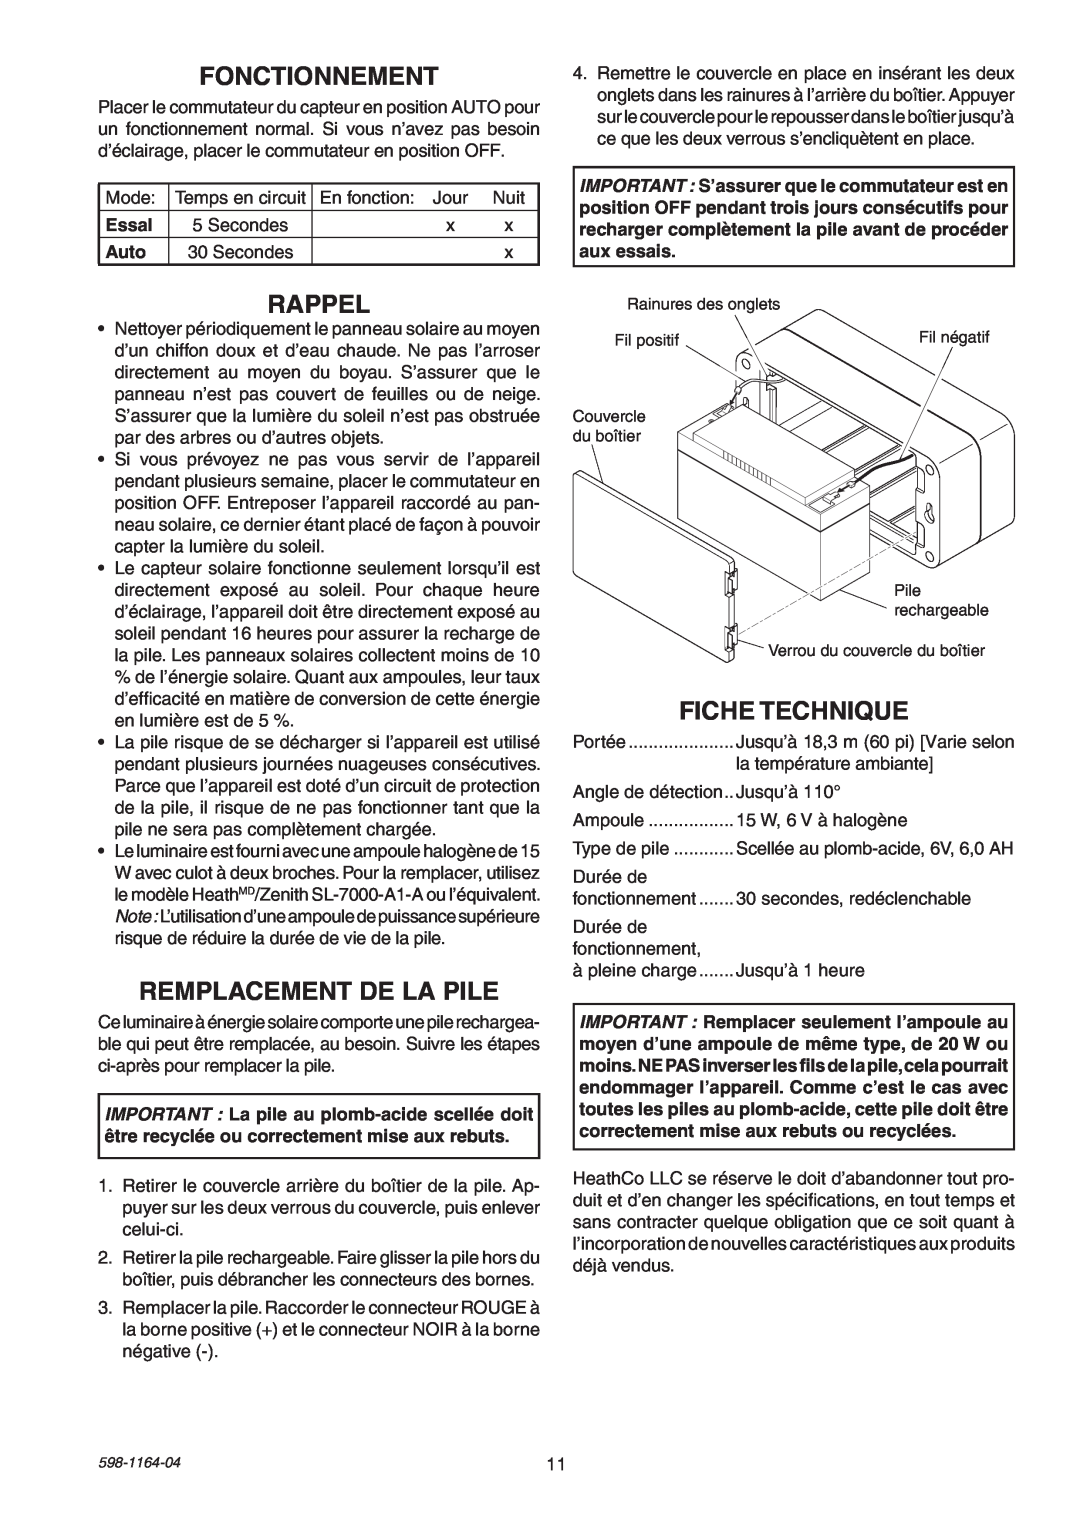 Heath Zenith SH-7001 manual Fonctionnement, Rappel, Remplacement De La Pile, Fiche Technique, Essal, Auto 